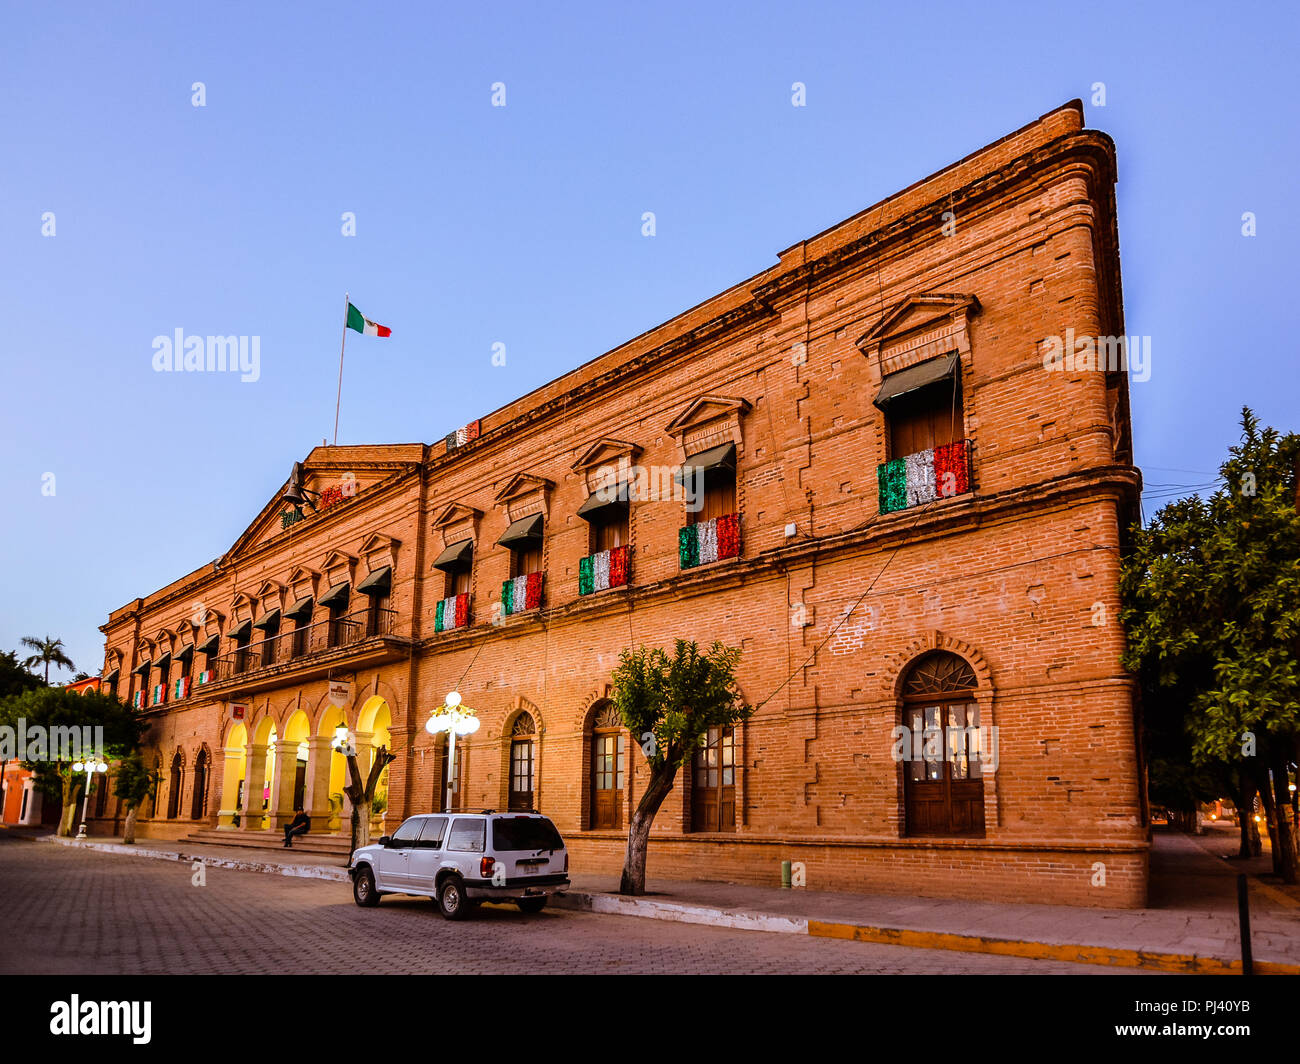 El Fuerte, Messico - Ott. 31, 2016: Palacio Municipal - palazzo comunale di El Fuerte, Sinaloa, Messico. Foto Stock